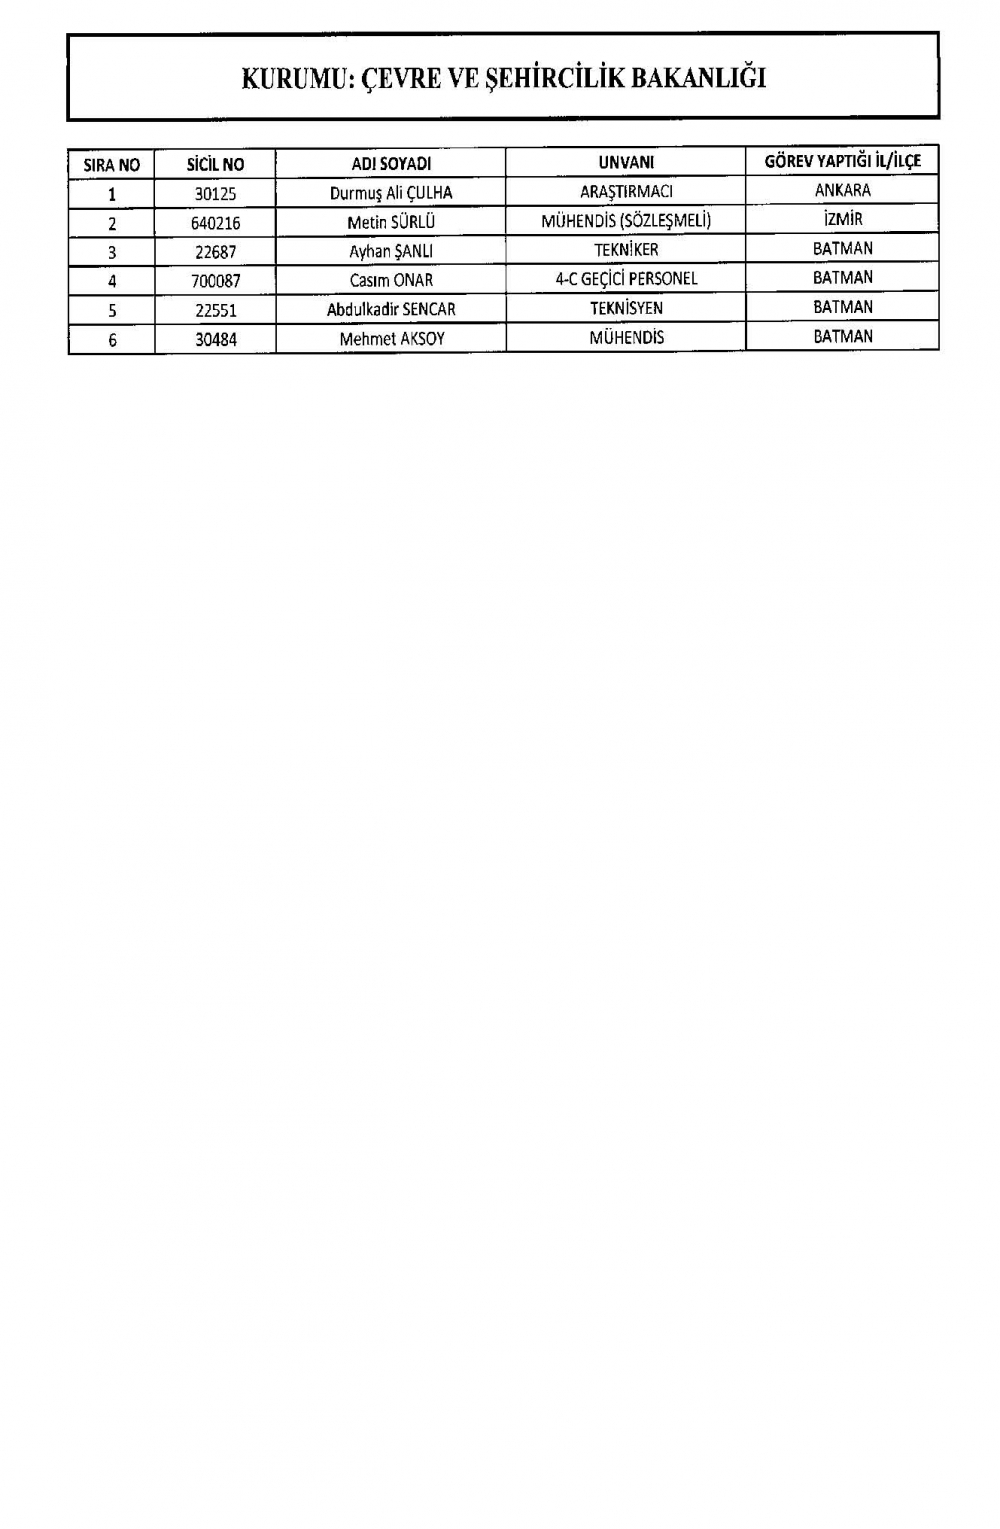 KHK ile görevine iade edilen personelin tam listesi 15 Temmuz 10